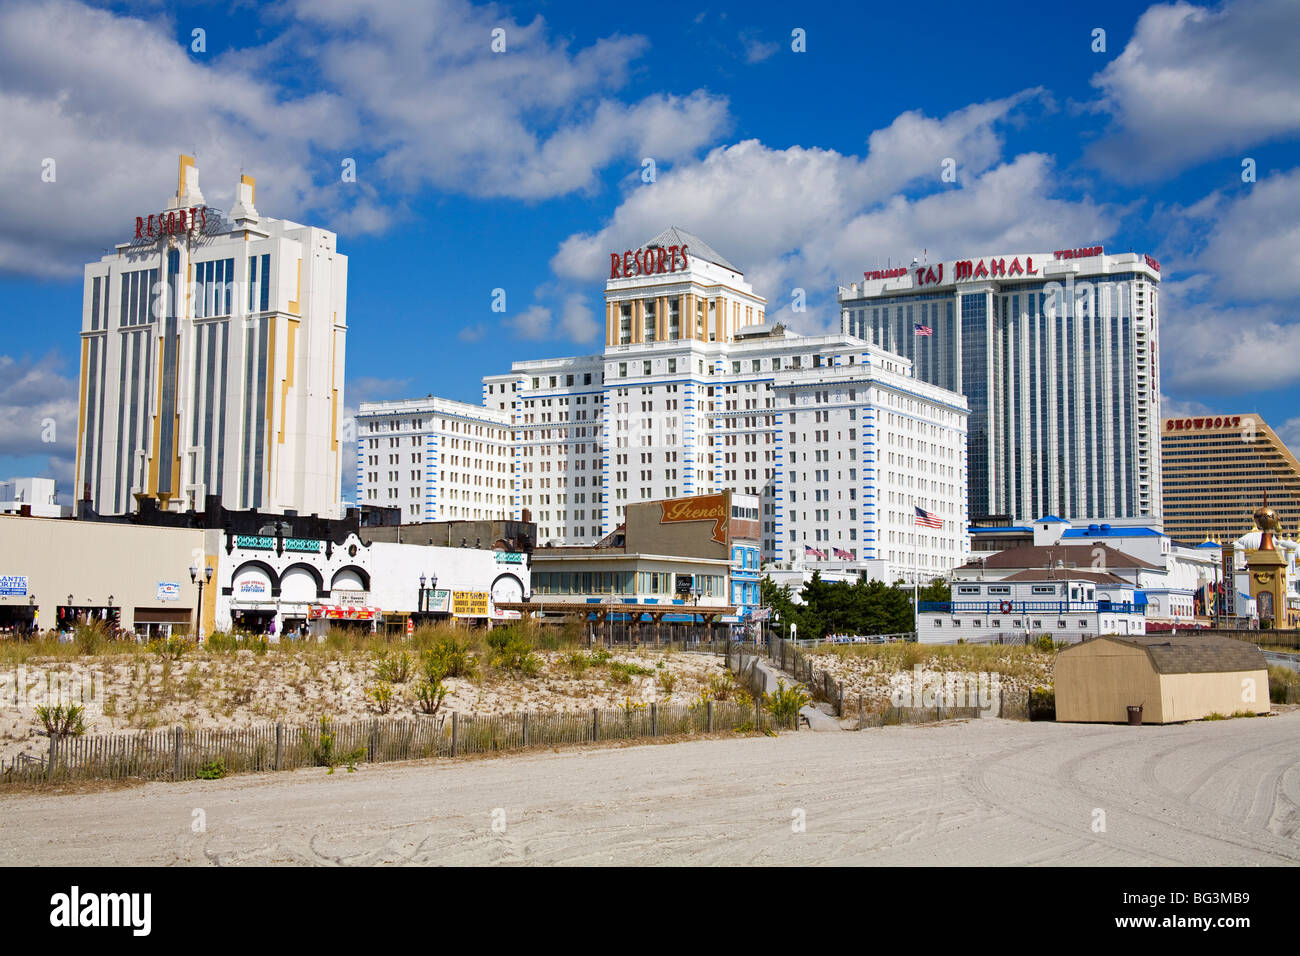 atlantic city casino hotels on boardwalk